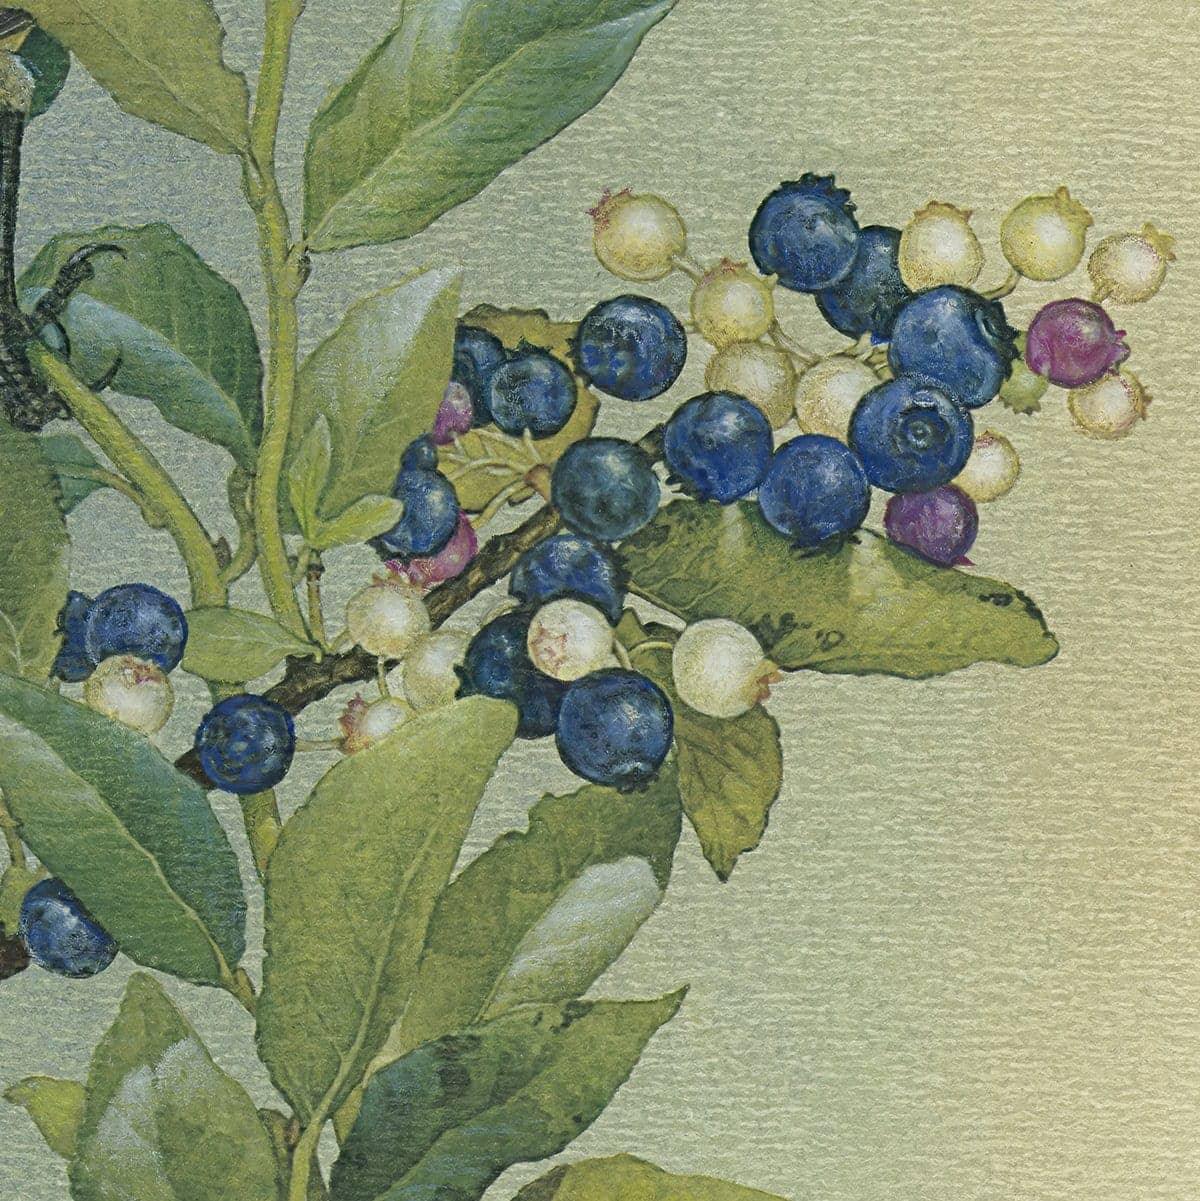 Cedar Waxwings in Blueberry Bush - Art Print | Artwork by Glen Loates